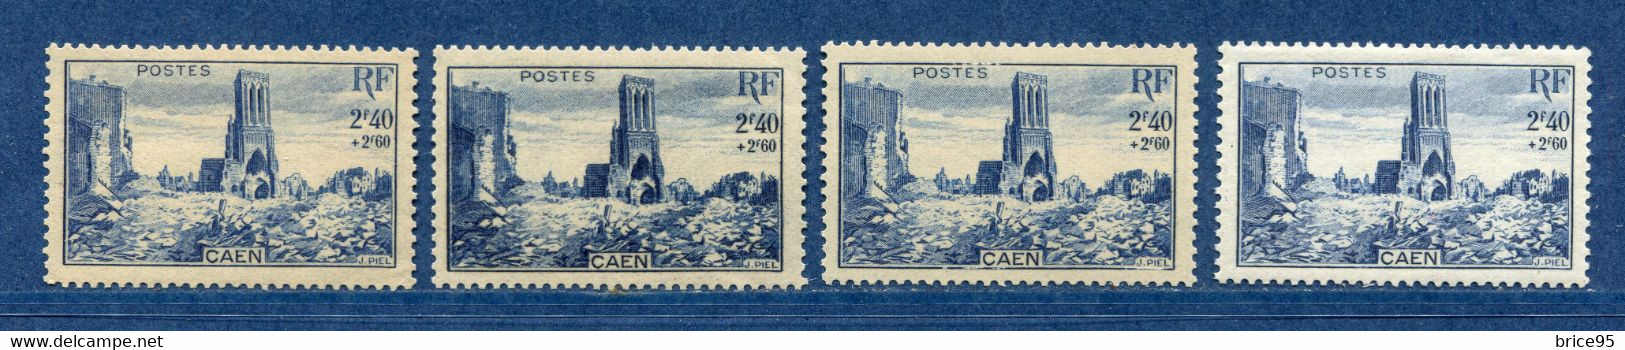 ⭐ France - Variété - YT N° 746 - Couleurs - Pétouille - Neuf Sans Charnière - 1945 ⭐ - Unused Stamps